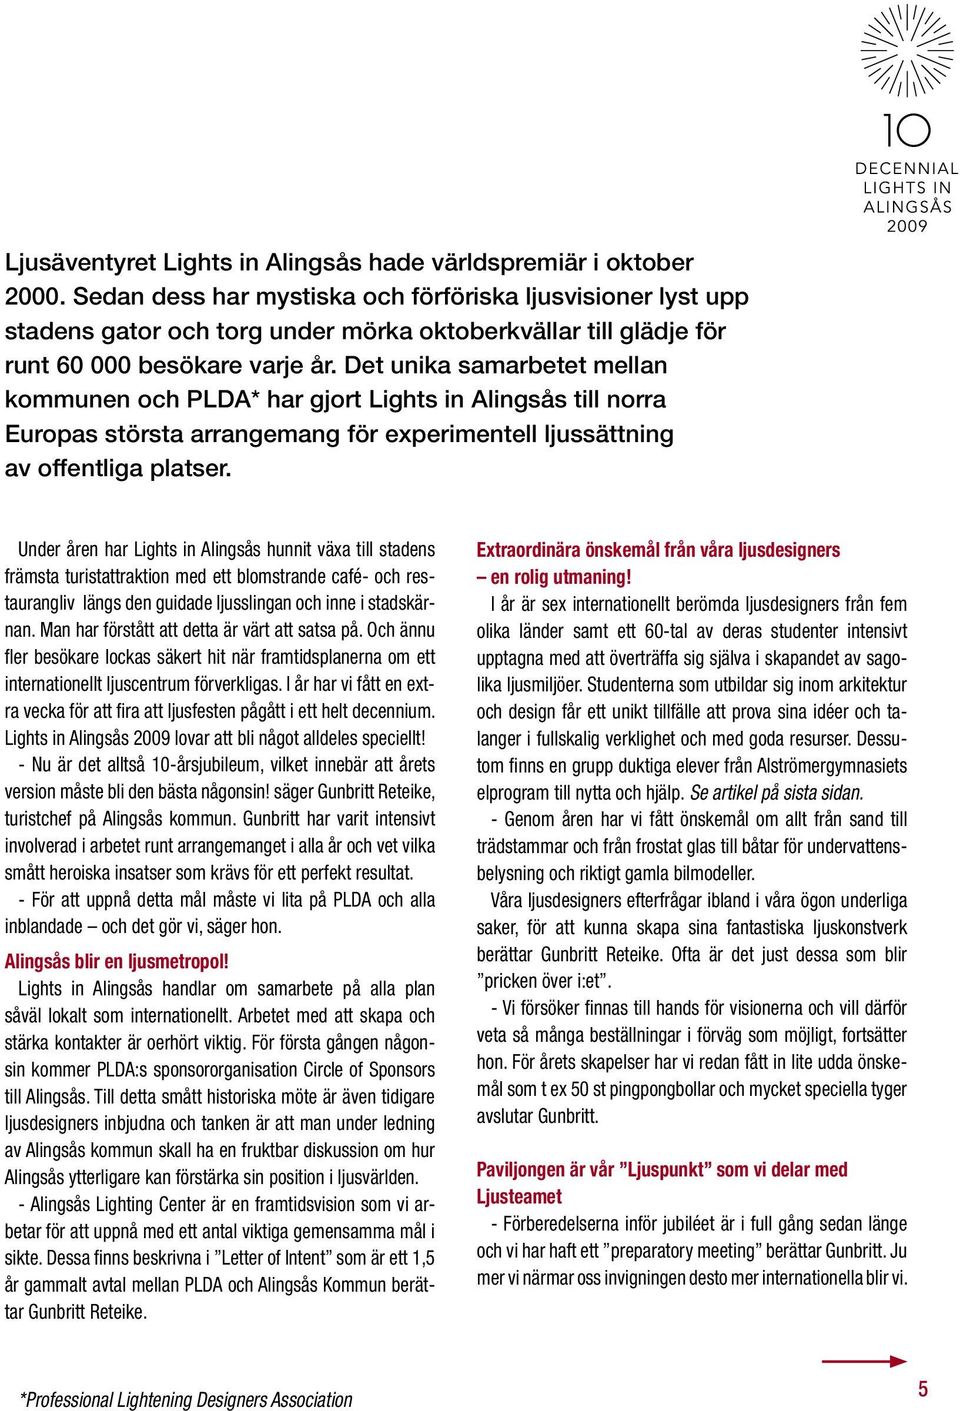 Det unika samarbetet mellan kommunen och PLDA* har gjort Lights in Alingsås till norra Europas största arrangemang för experimentell ljussättning av offentliga platser.